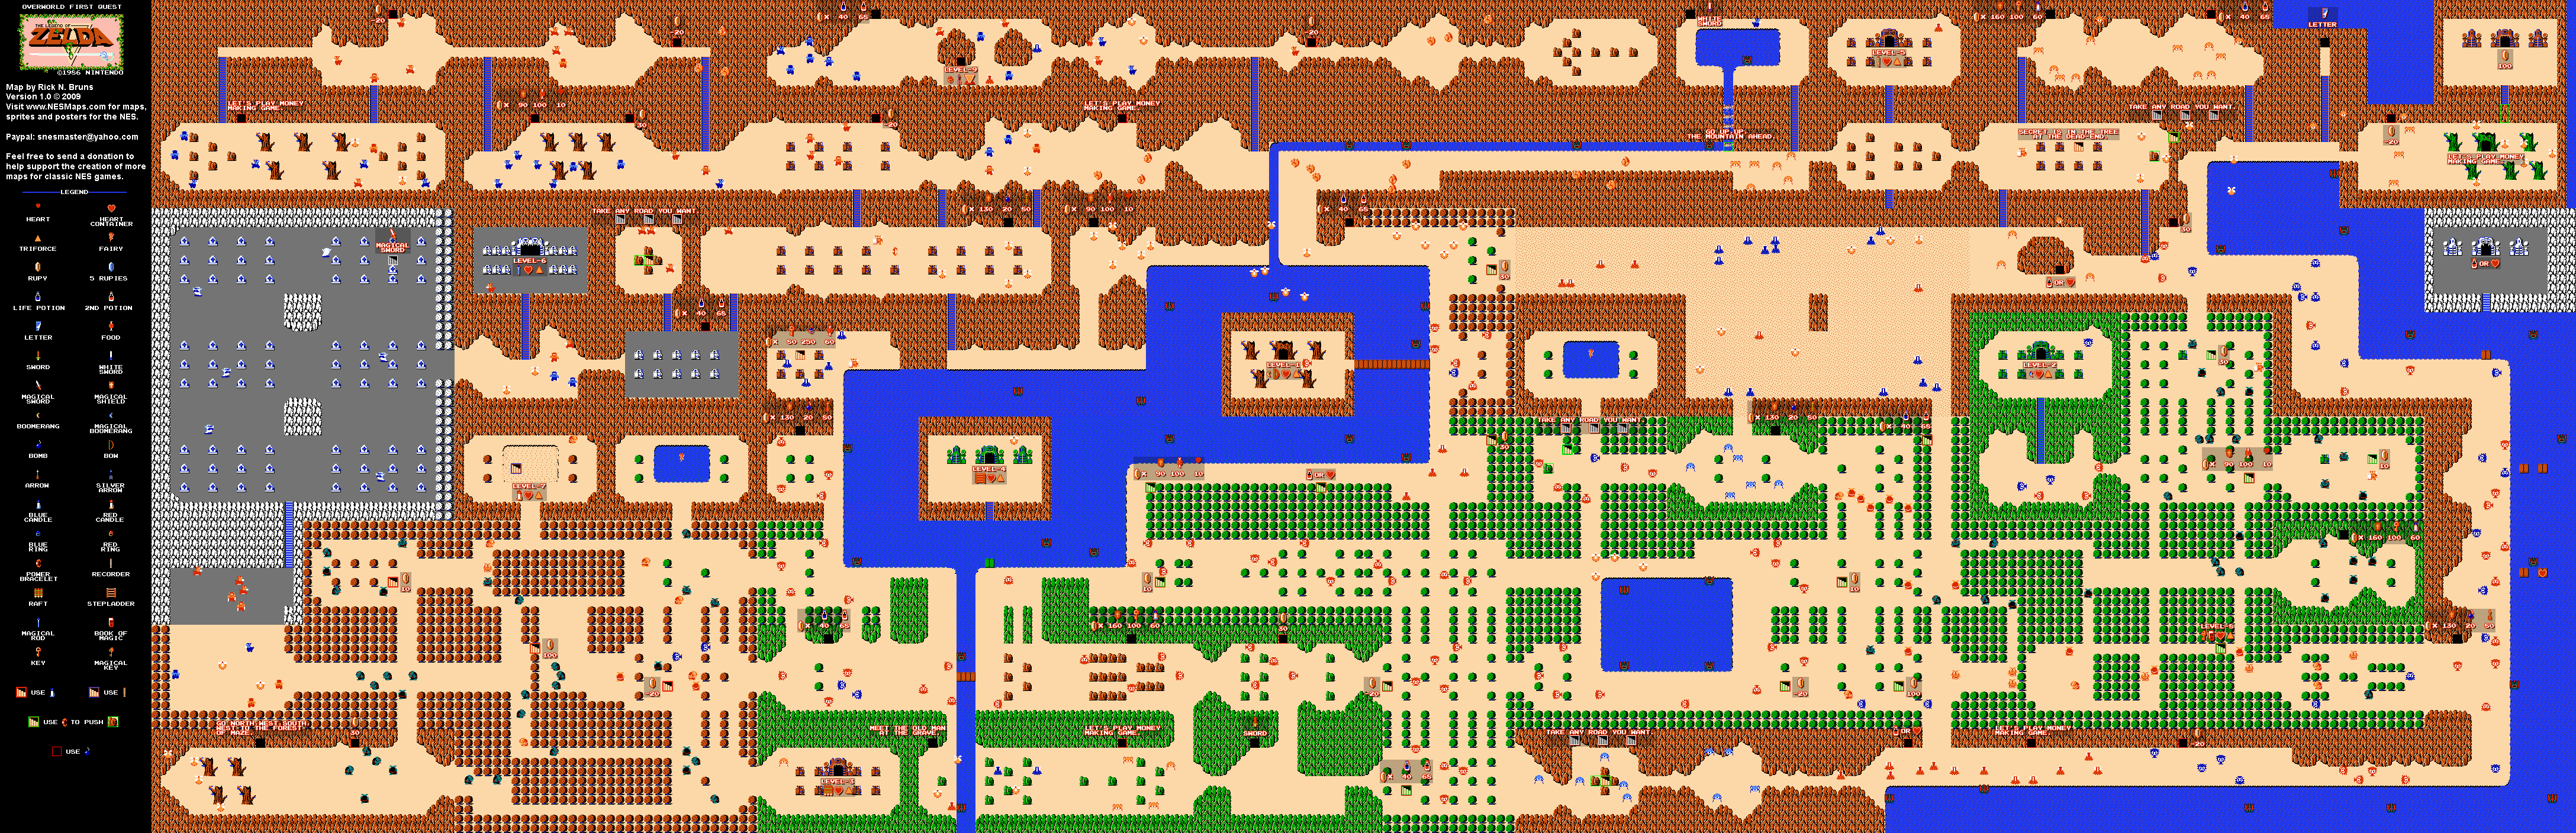 The Legend of Zelda - Overworld Quest 1 - NES Map